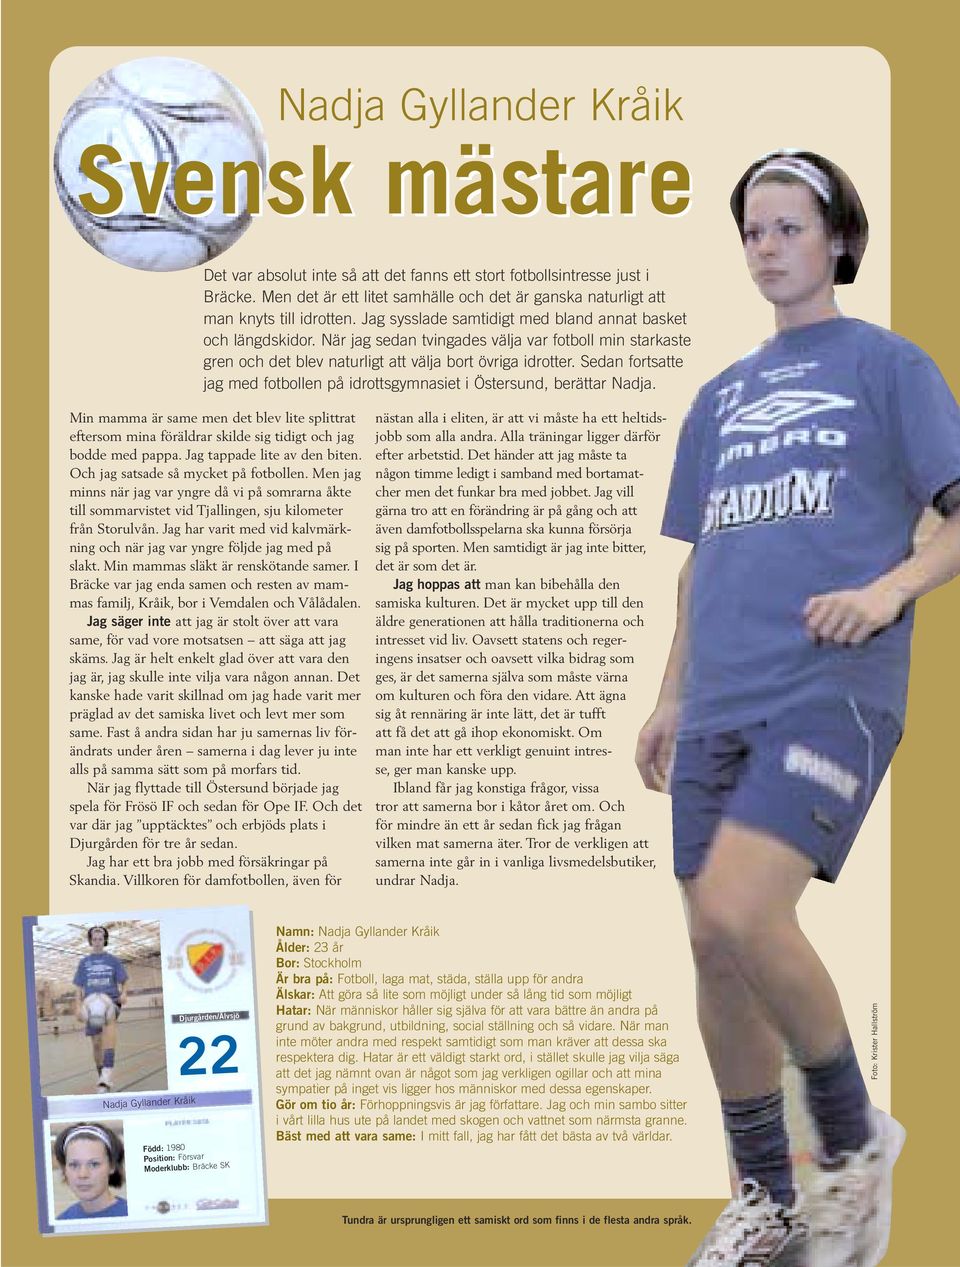 När jag sedan tvingades välja var fotboll min starkaste gren och det blev naturligt att välja bort övriga idrotter. Sedan fortsatte jag med fotbollen på idrottsgymnasiet i Östersund, berättar Nadja.